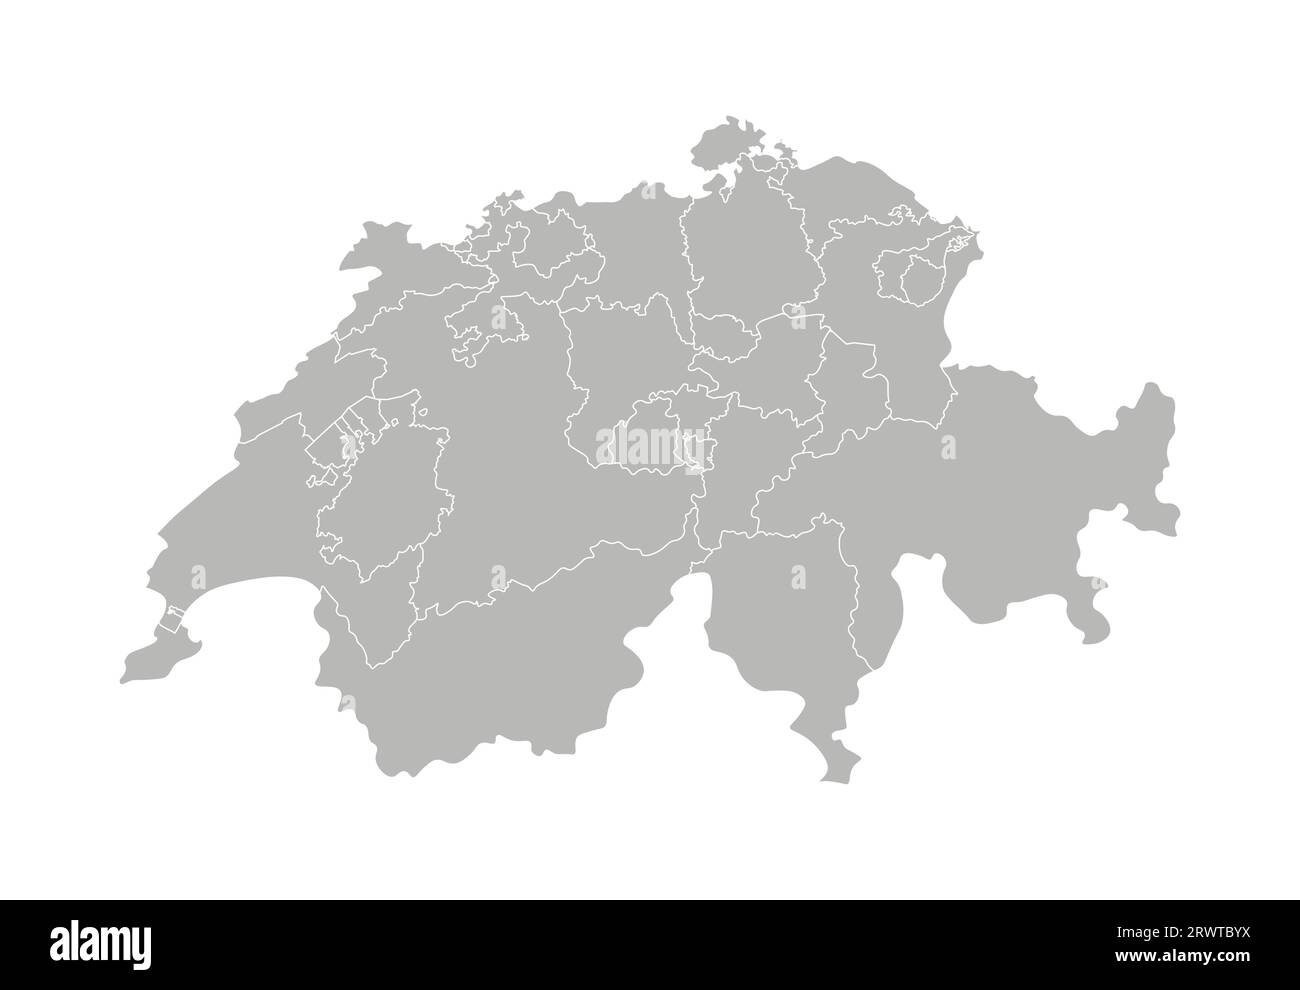 Vektorisolierte Darstellung einer vereinfachten Verwaltungskarte der Schweiz. Grenzen der Provinzen (Regionen). Graue Silhouetten. Weiße Umrandung. Stock Vektor